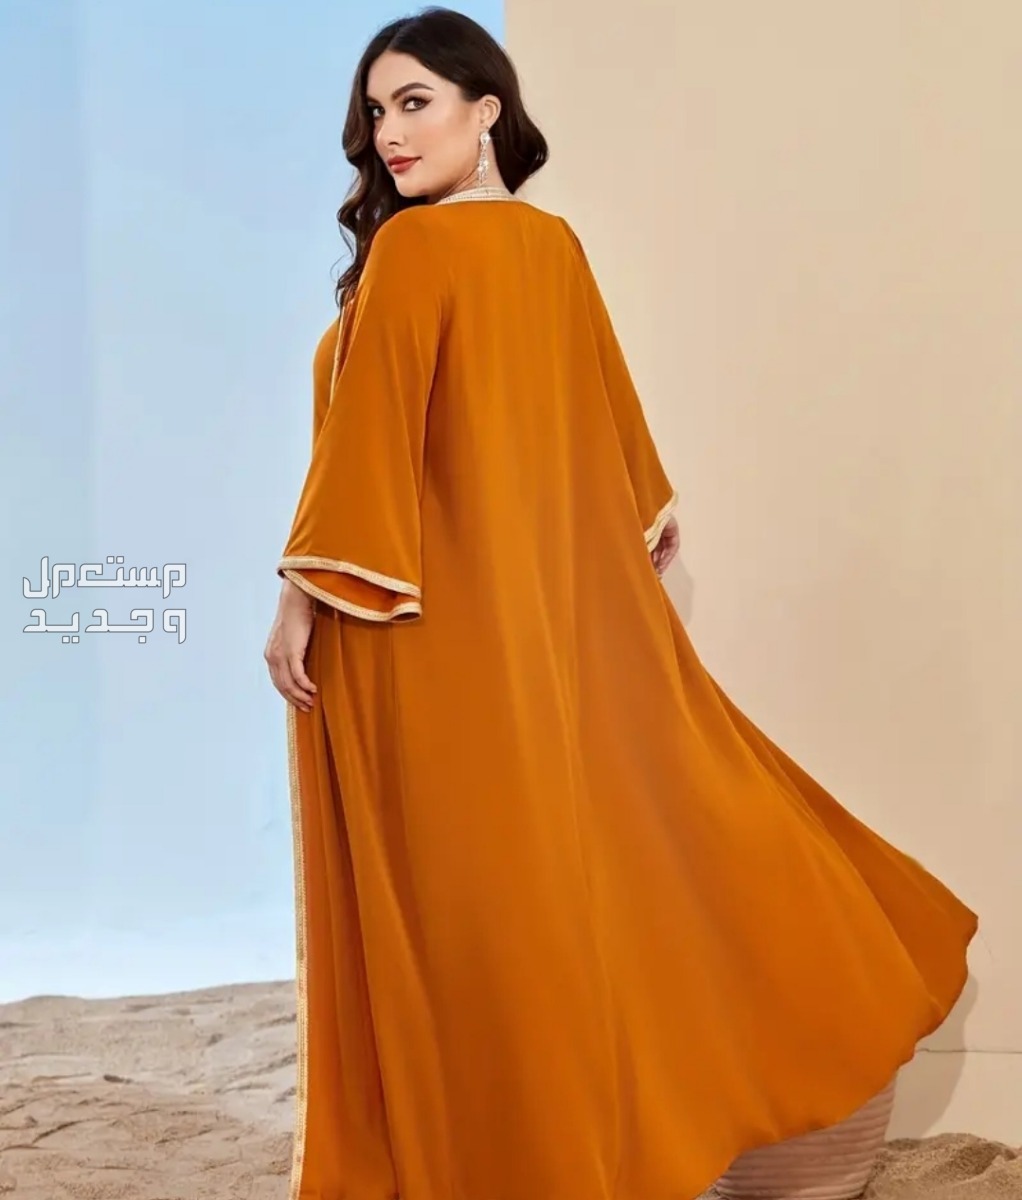 للبيع فستان جديد في دبا الفجيرة بسعر 210 درهم إماراتي